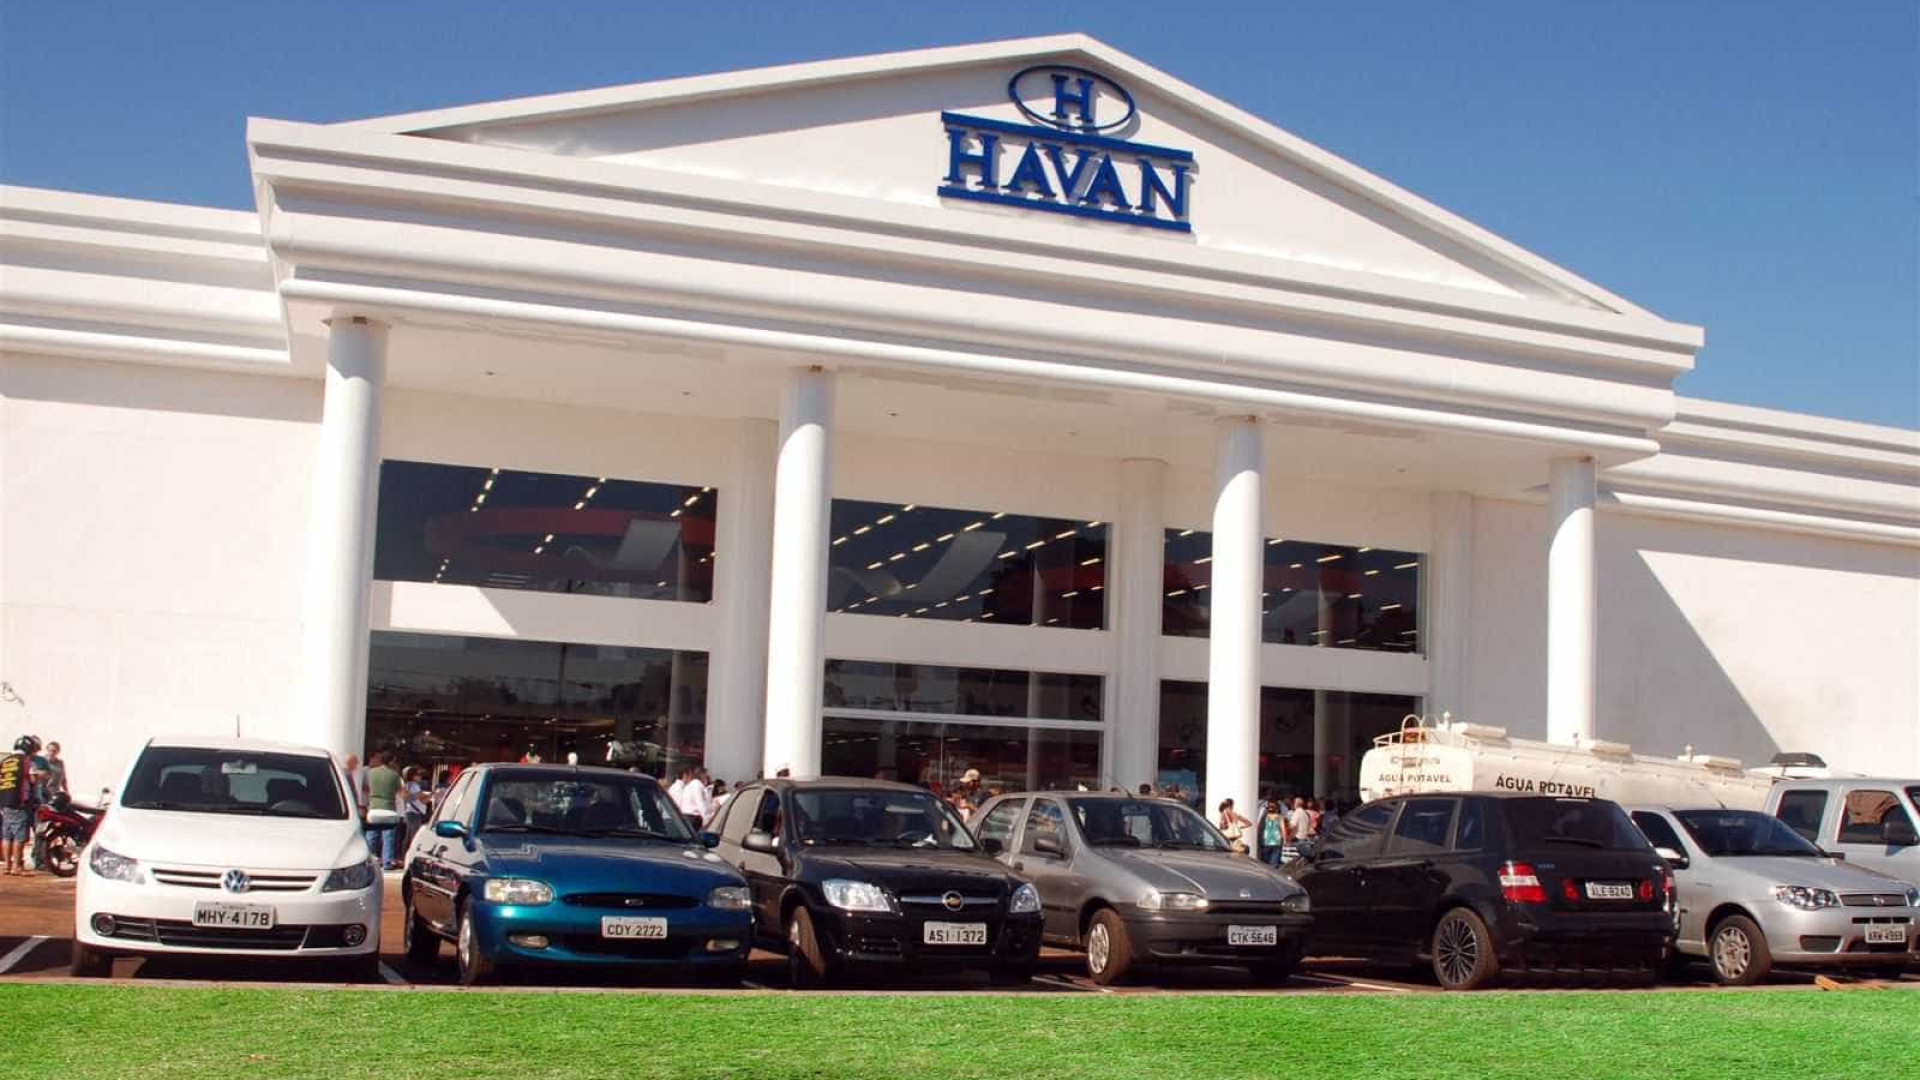 Havan oferece R$ 100 mil por informações sobre incêndio em estátua em Rondônia